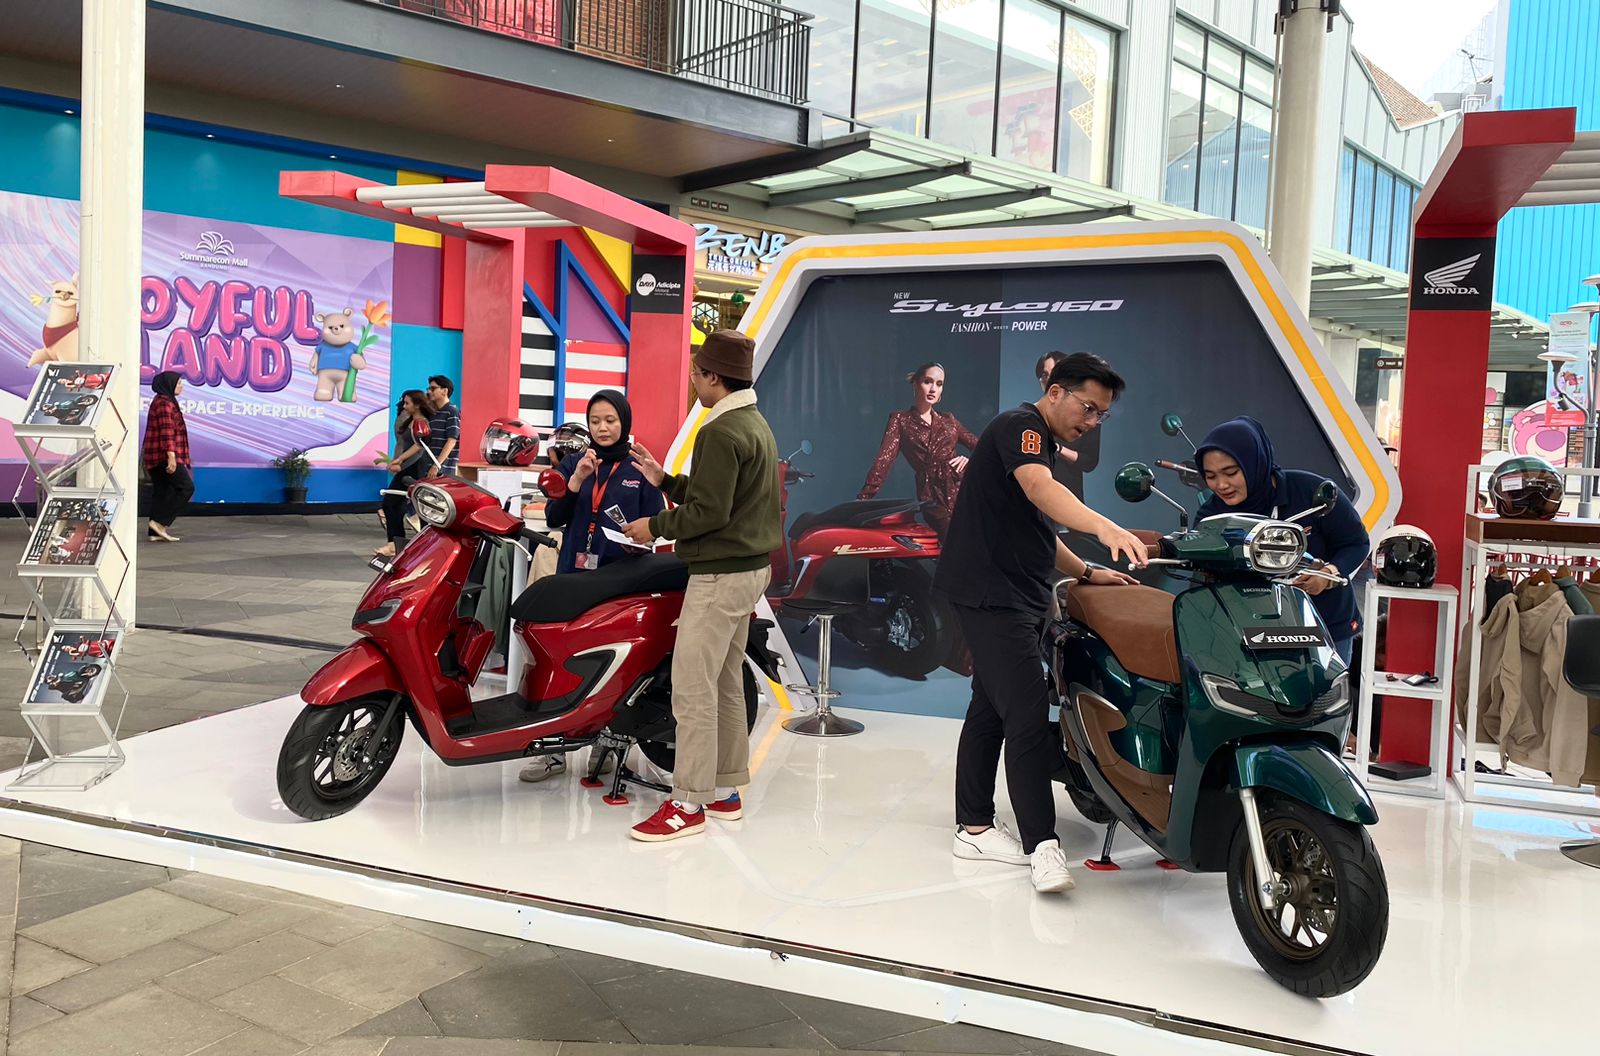 Frontline People Sepeda Motor Honda sedang menjelaskan fitur-fitur unggulan All New Honda Stylo 160 kepada konsumen di acara Honda Premium Matic Day Bandung 